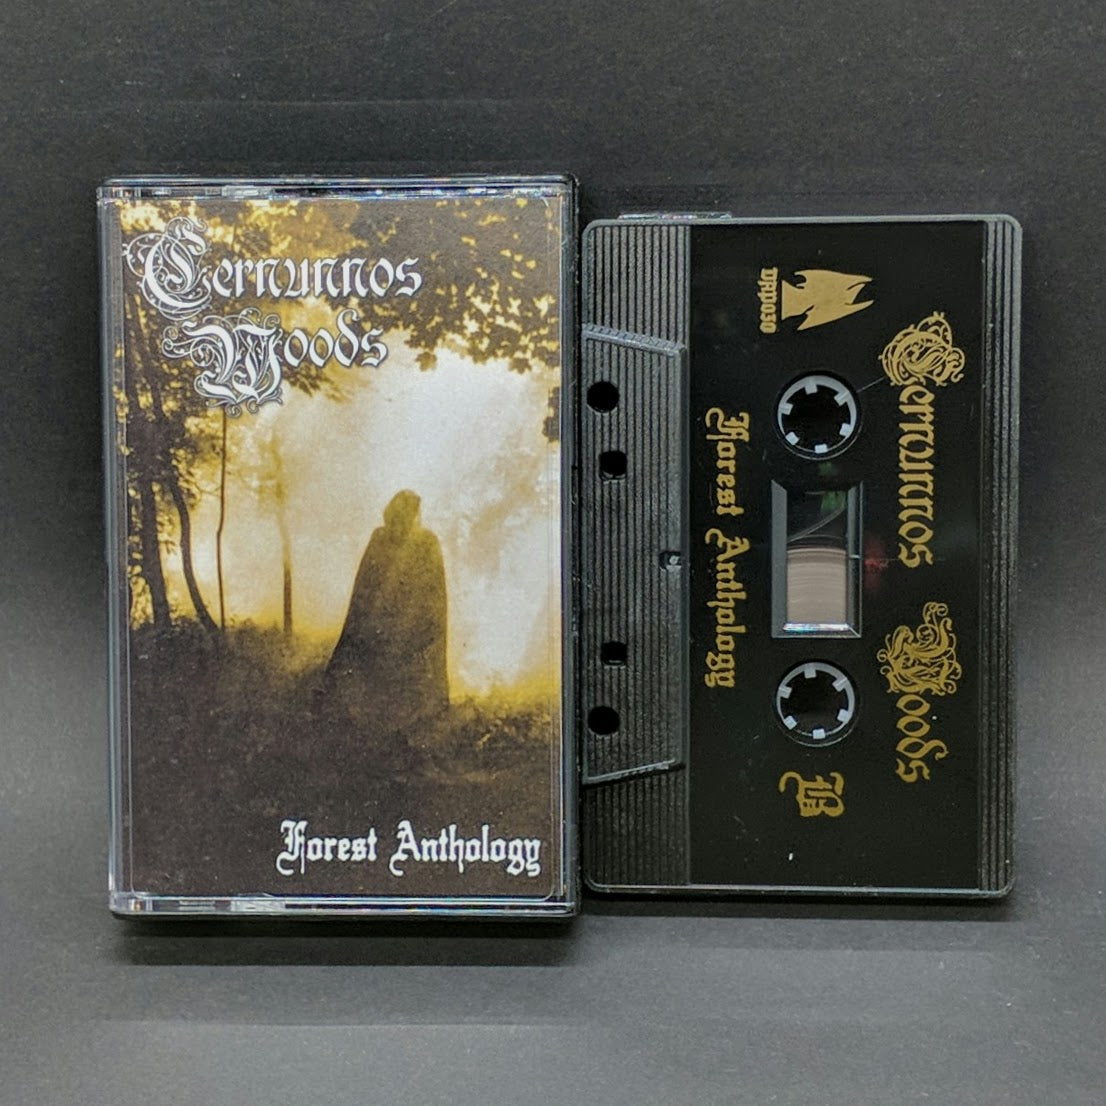 [SOLD OUT] CERNUNNOS WOODS "Forest Anthology" Cassette Tape